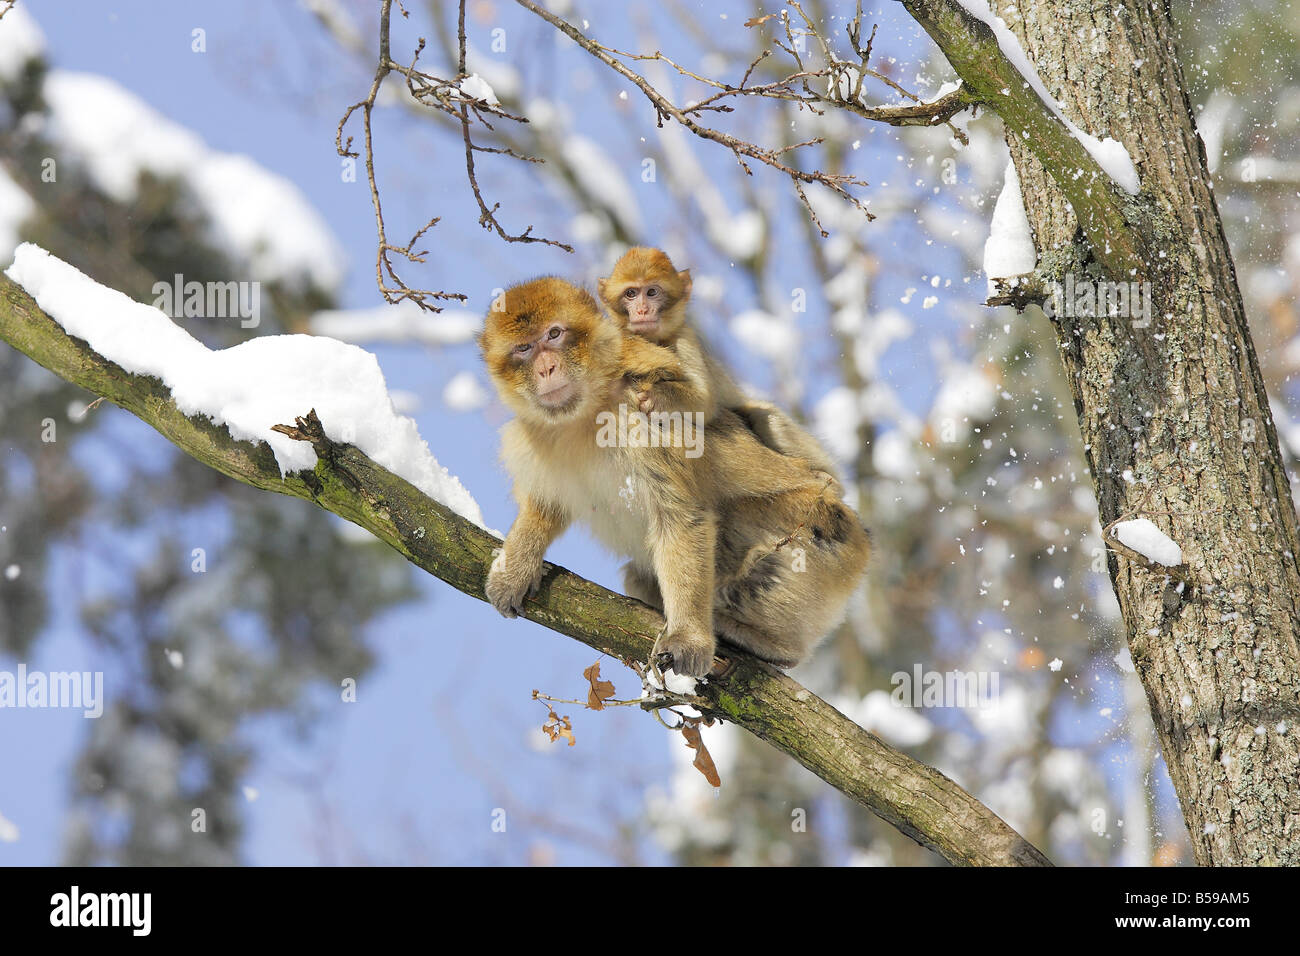 Macaque de barbarie, Barbary Ape (Macaca sylvanus), la mère avec les jeunes sur le dos Banque D'Images